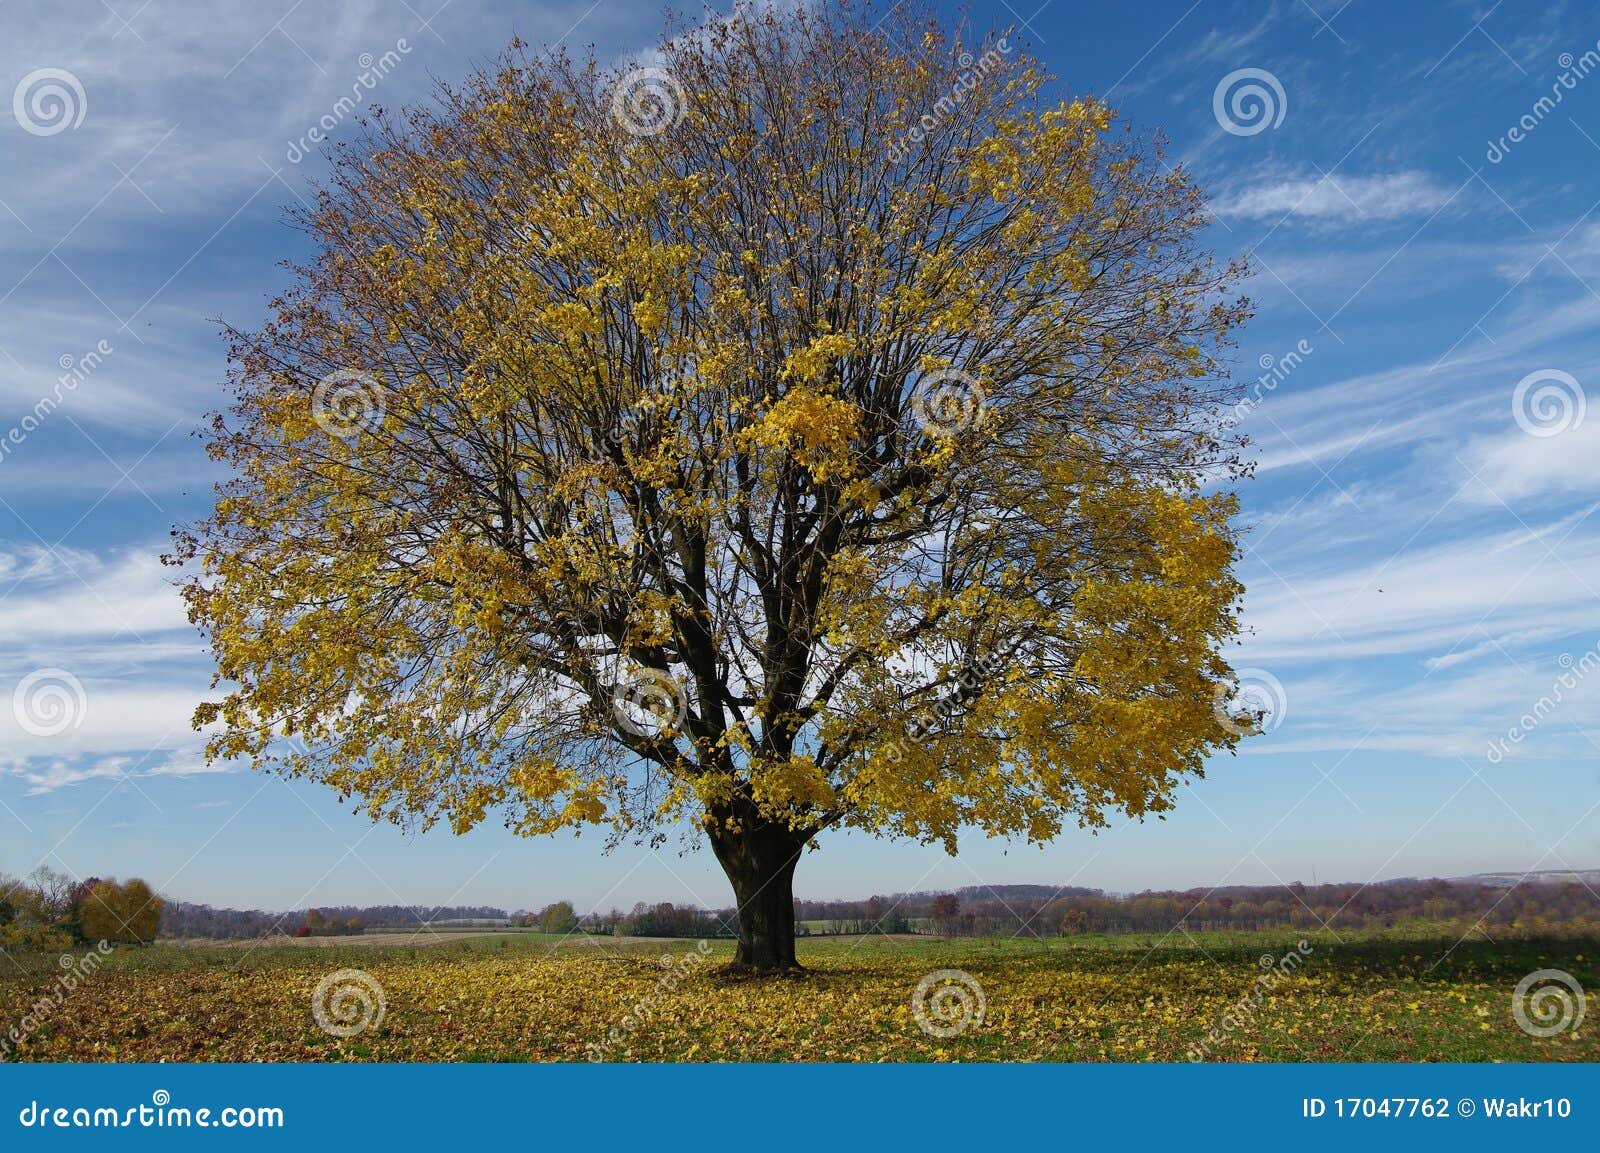 tree shedding leaves stock photography - image: 17047762